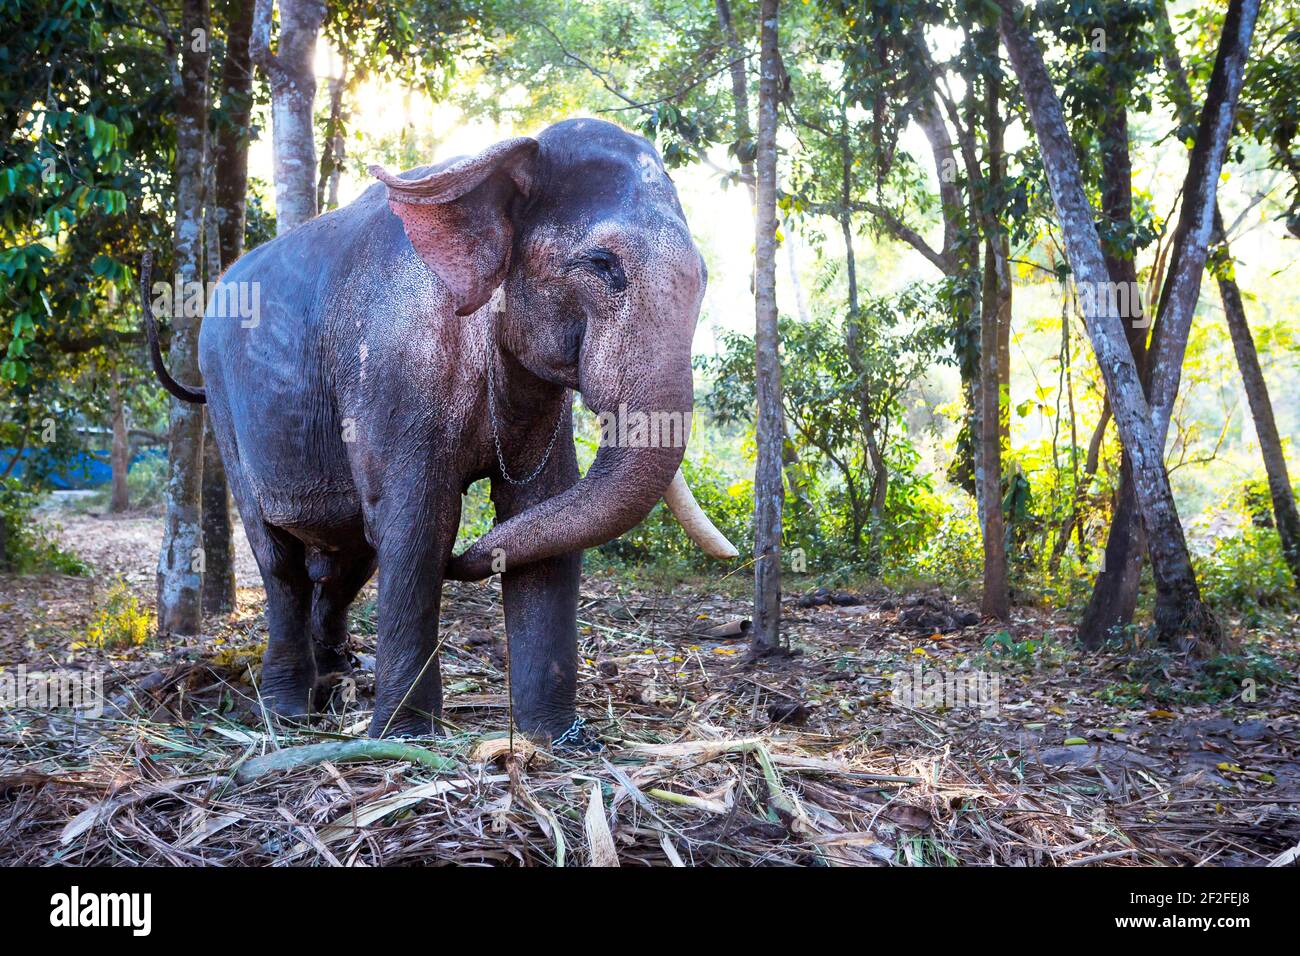 Indischer Elefant im Dschungel an einer Kette - Unterhaltung für Touristen, harte Arbeit auf dem Bauernhof, Reiten, Ausflüge. Elefant im Wald in der Sonne Th Stockfoto